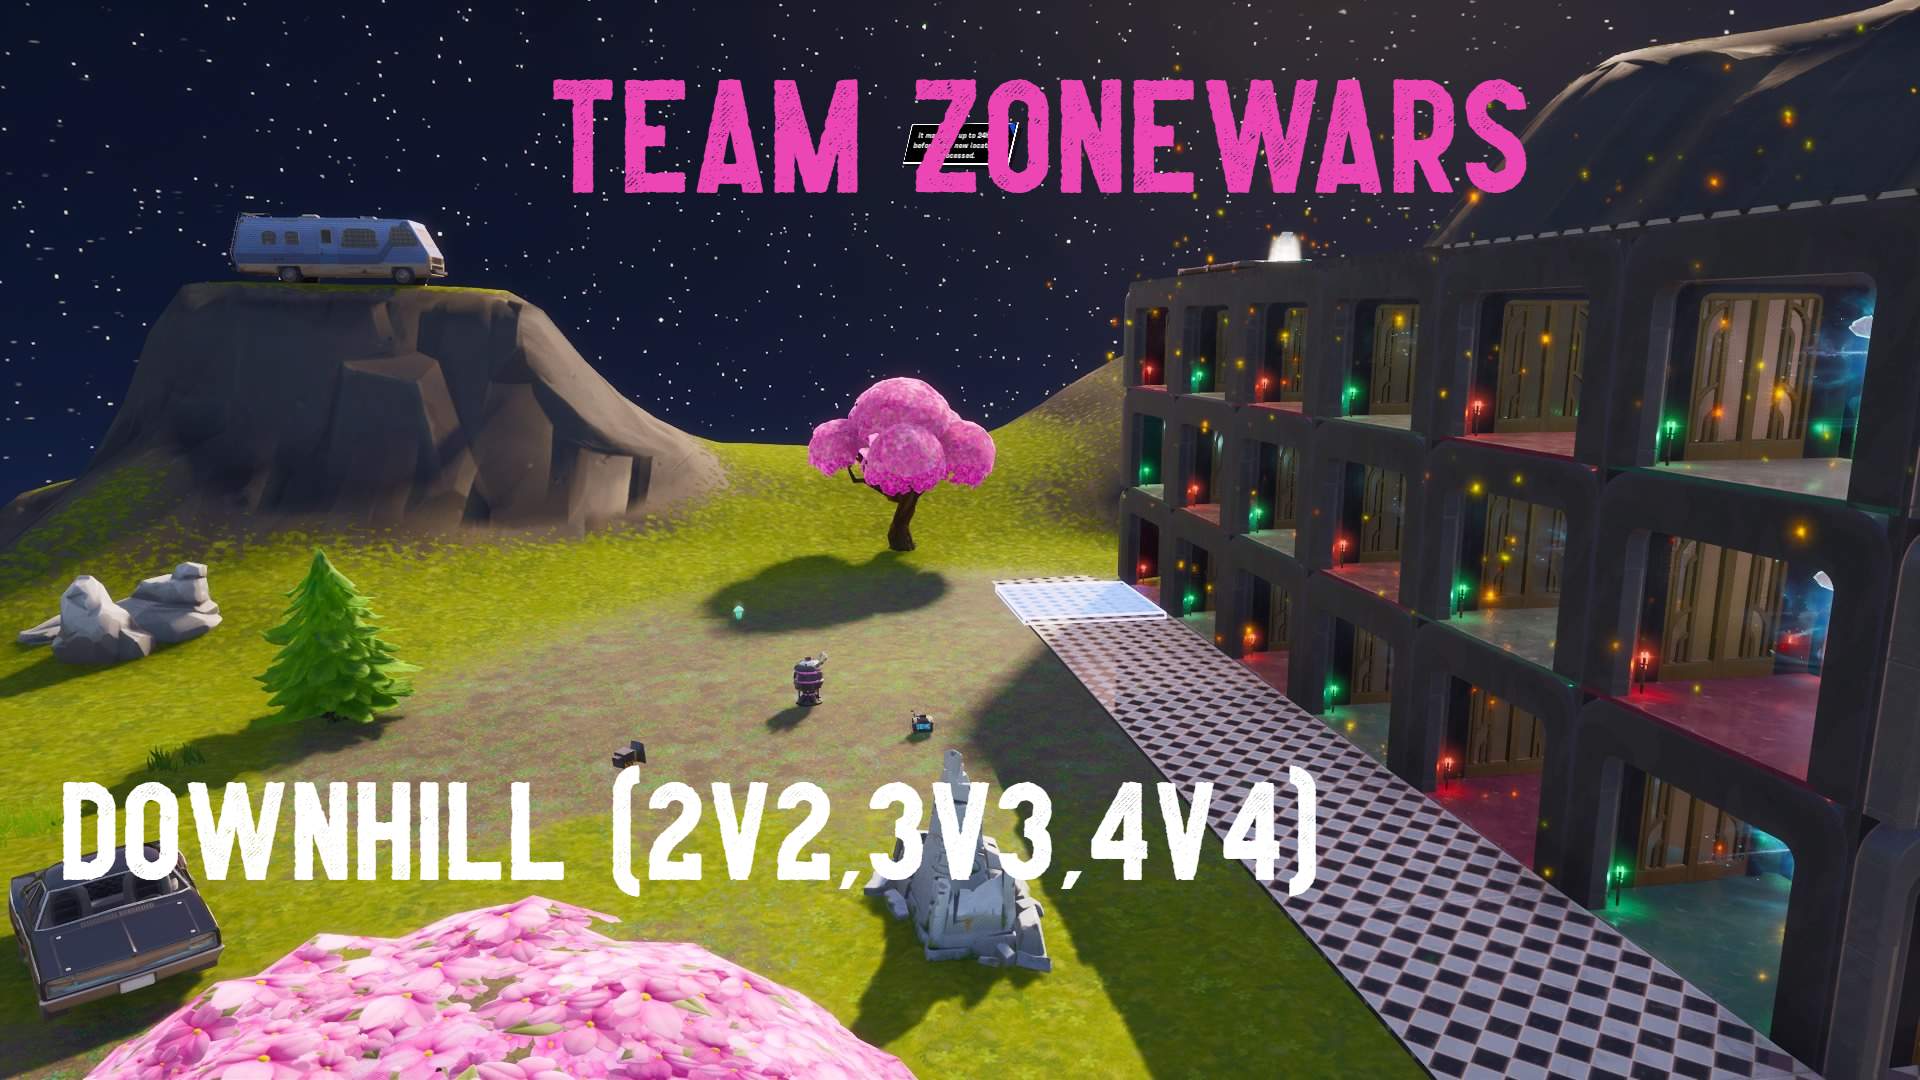 2v2 zone wars code